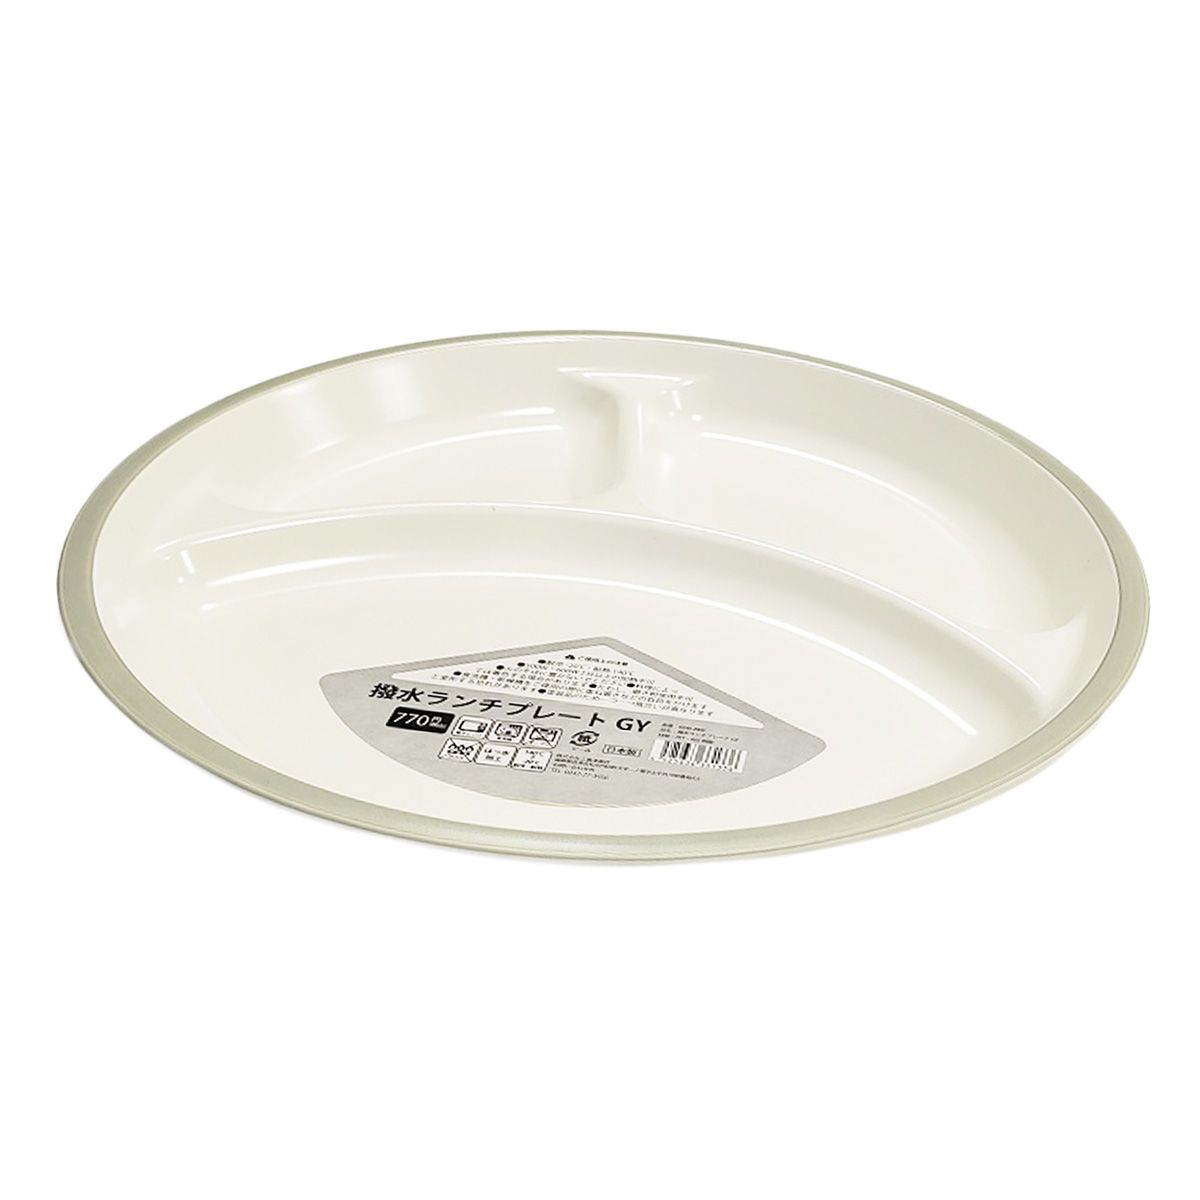 皿 仕切り皿 撥水ランチプレートワンプレートご飯  グレー 342025